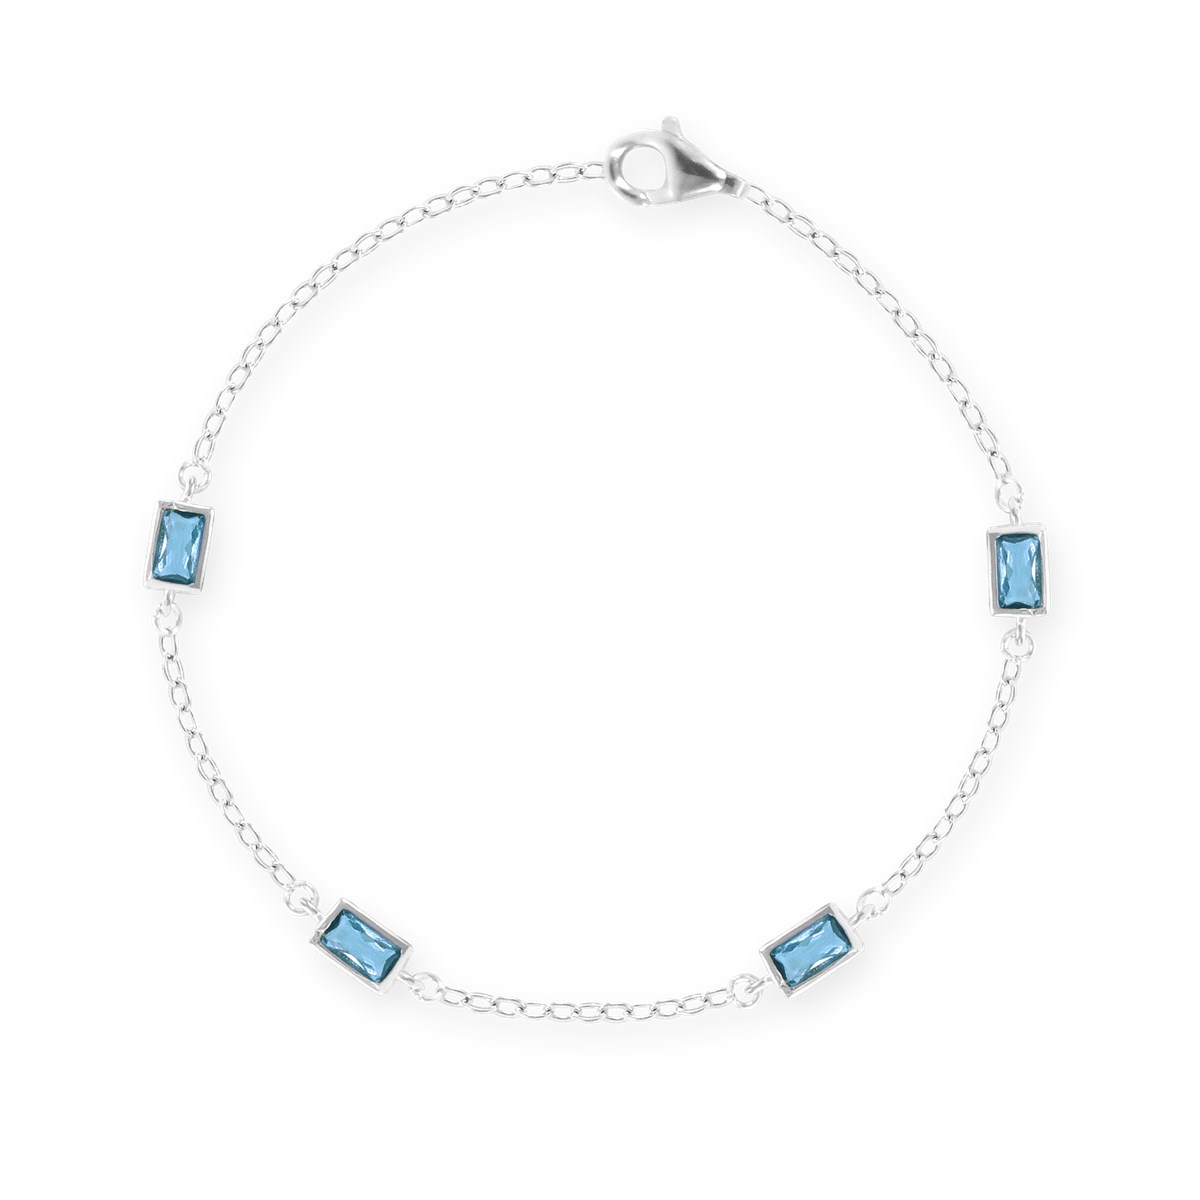 Bracelet en argent 925 rhodié avec oxydes de zirconium teintés bleu